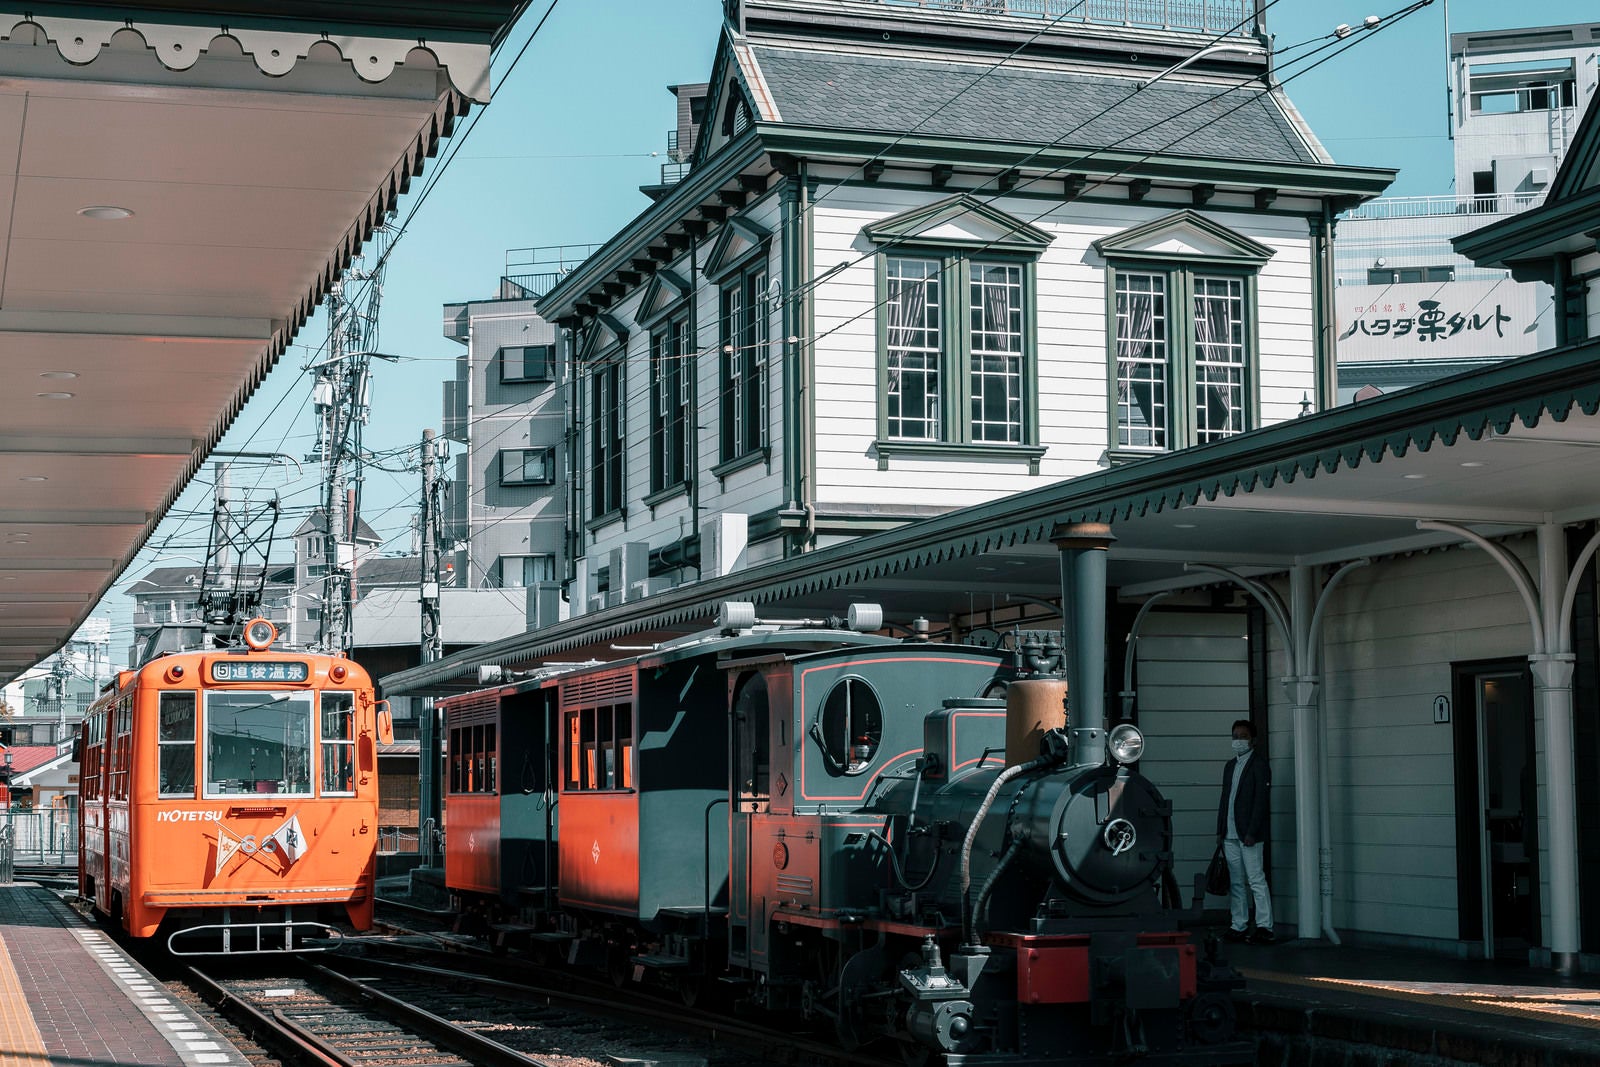 「駅に停車中の坊っちゃん列車」の写真